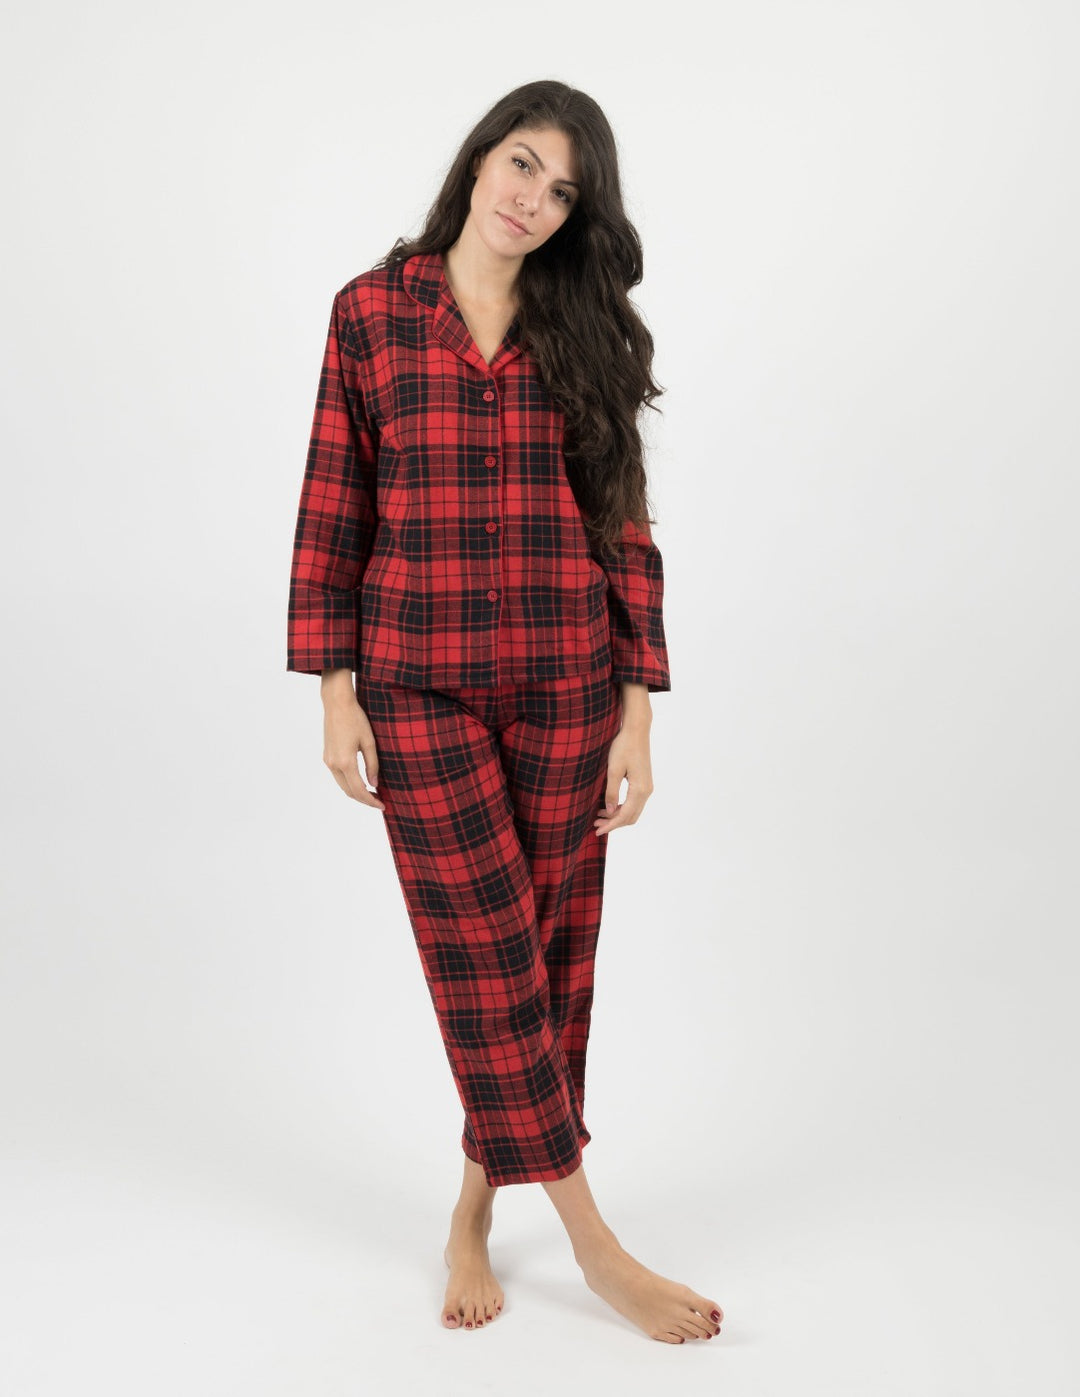 Black Women's Pajamas & Sleepwear